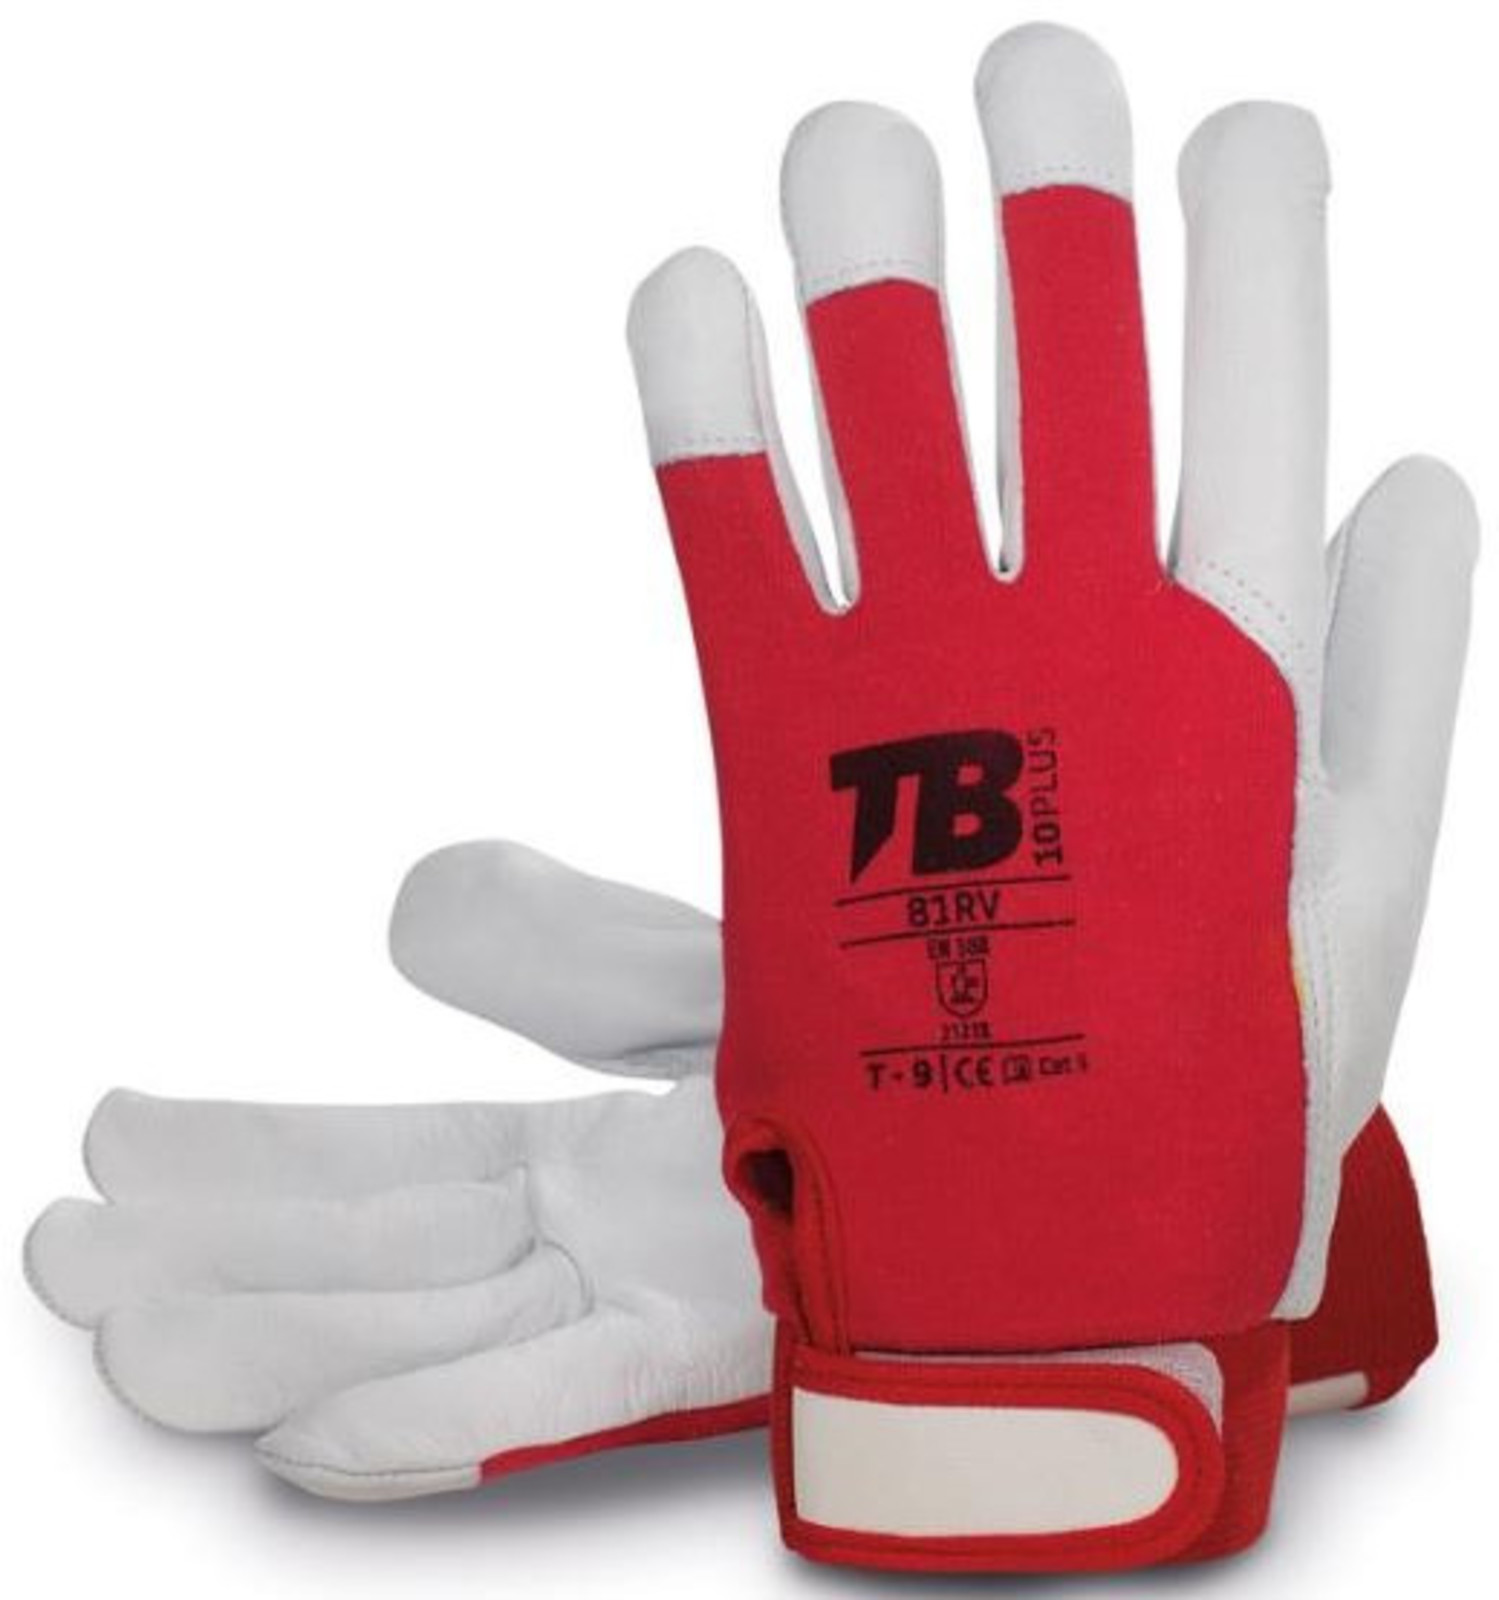 Pracovné rukavice TB 81RV kombinované - veľkosť: 6/XS